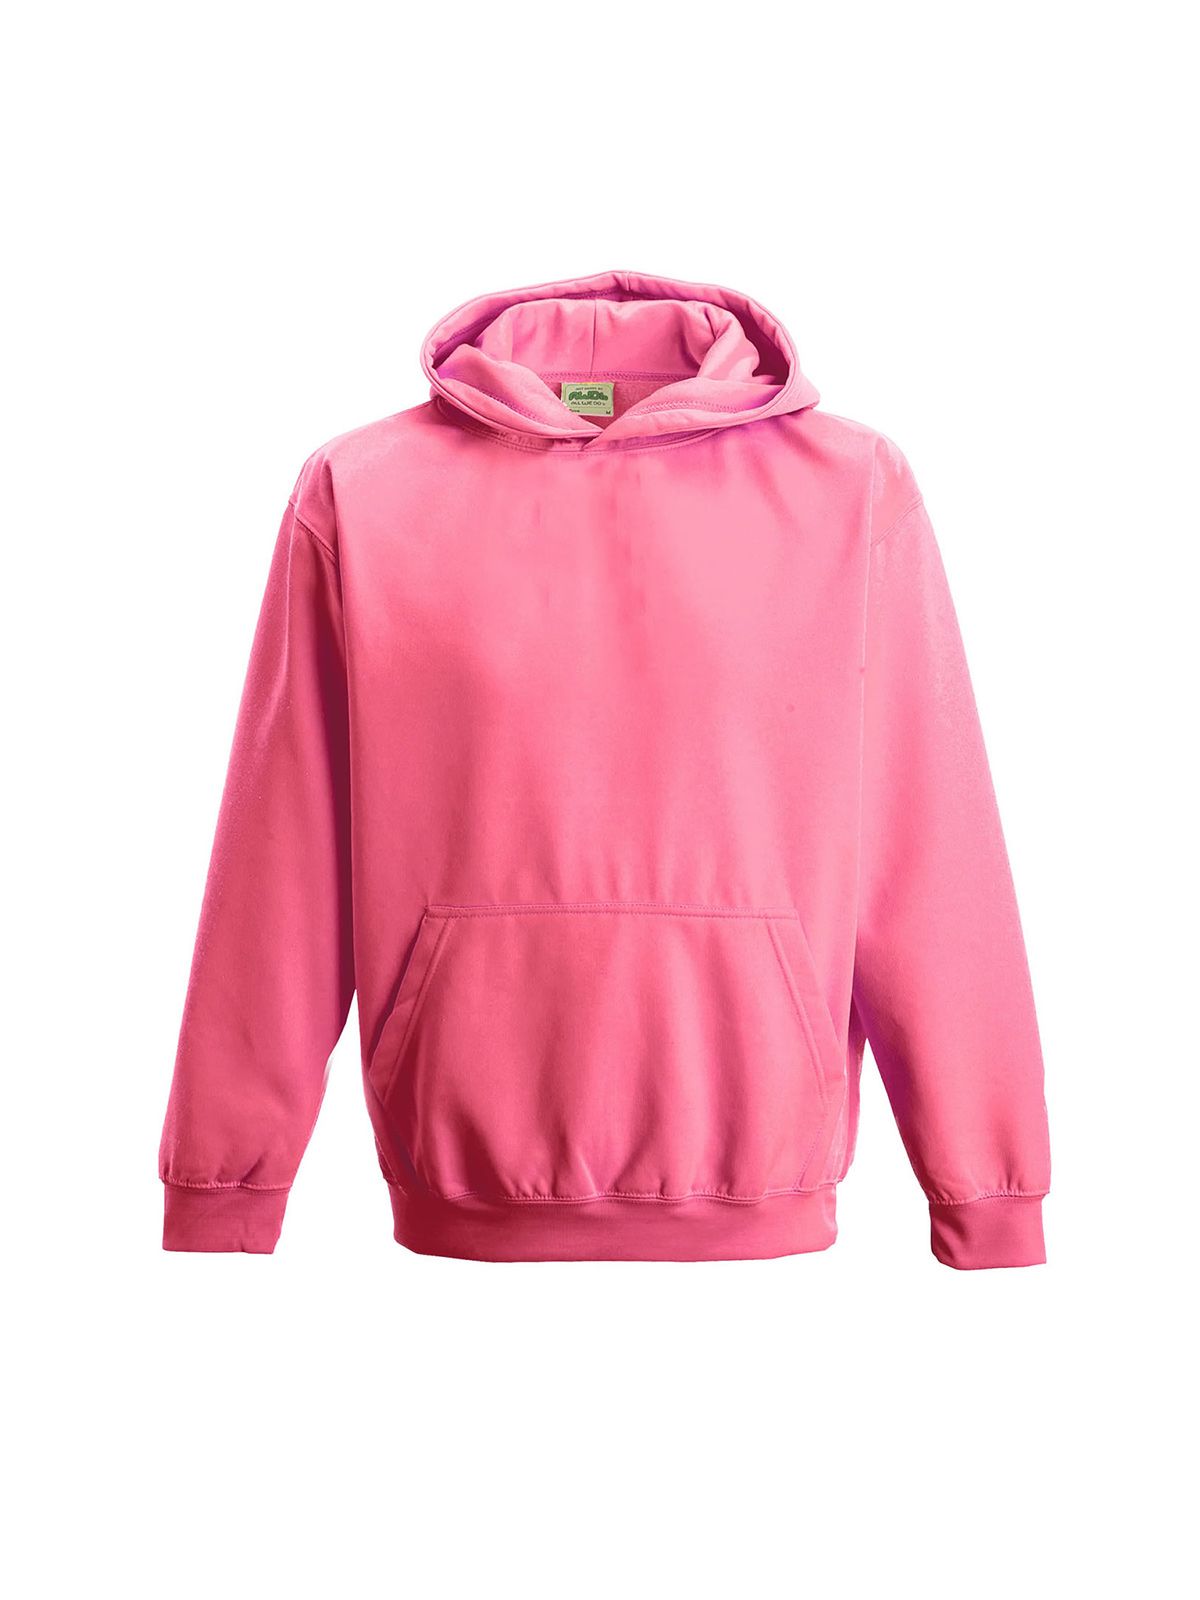 kids-electric-hoodie-electric-pink.webp